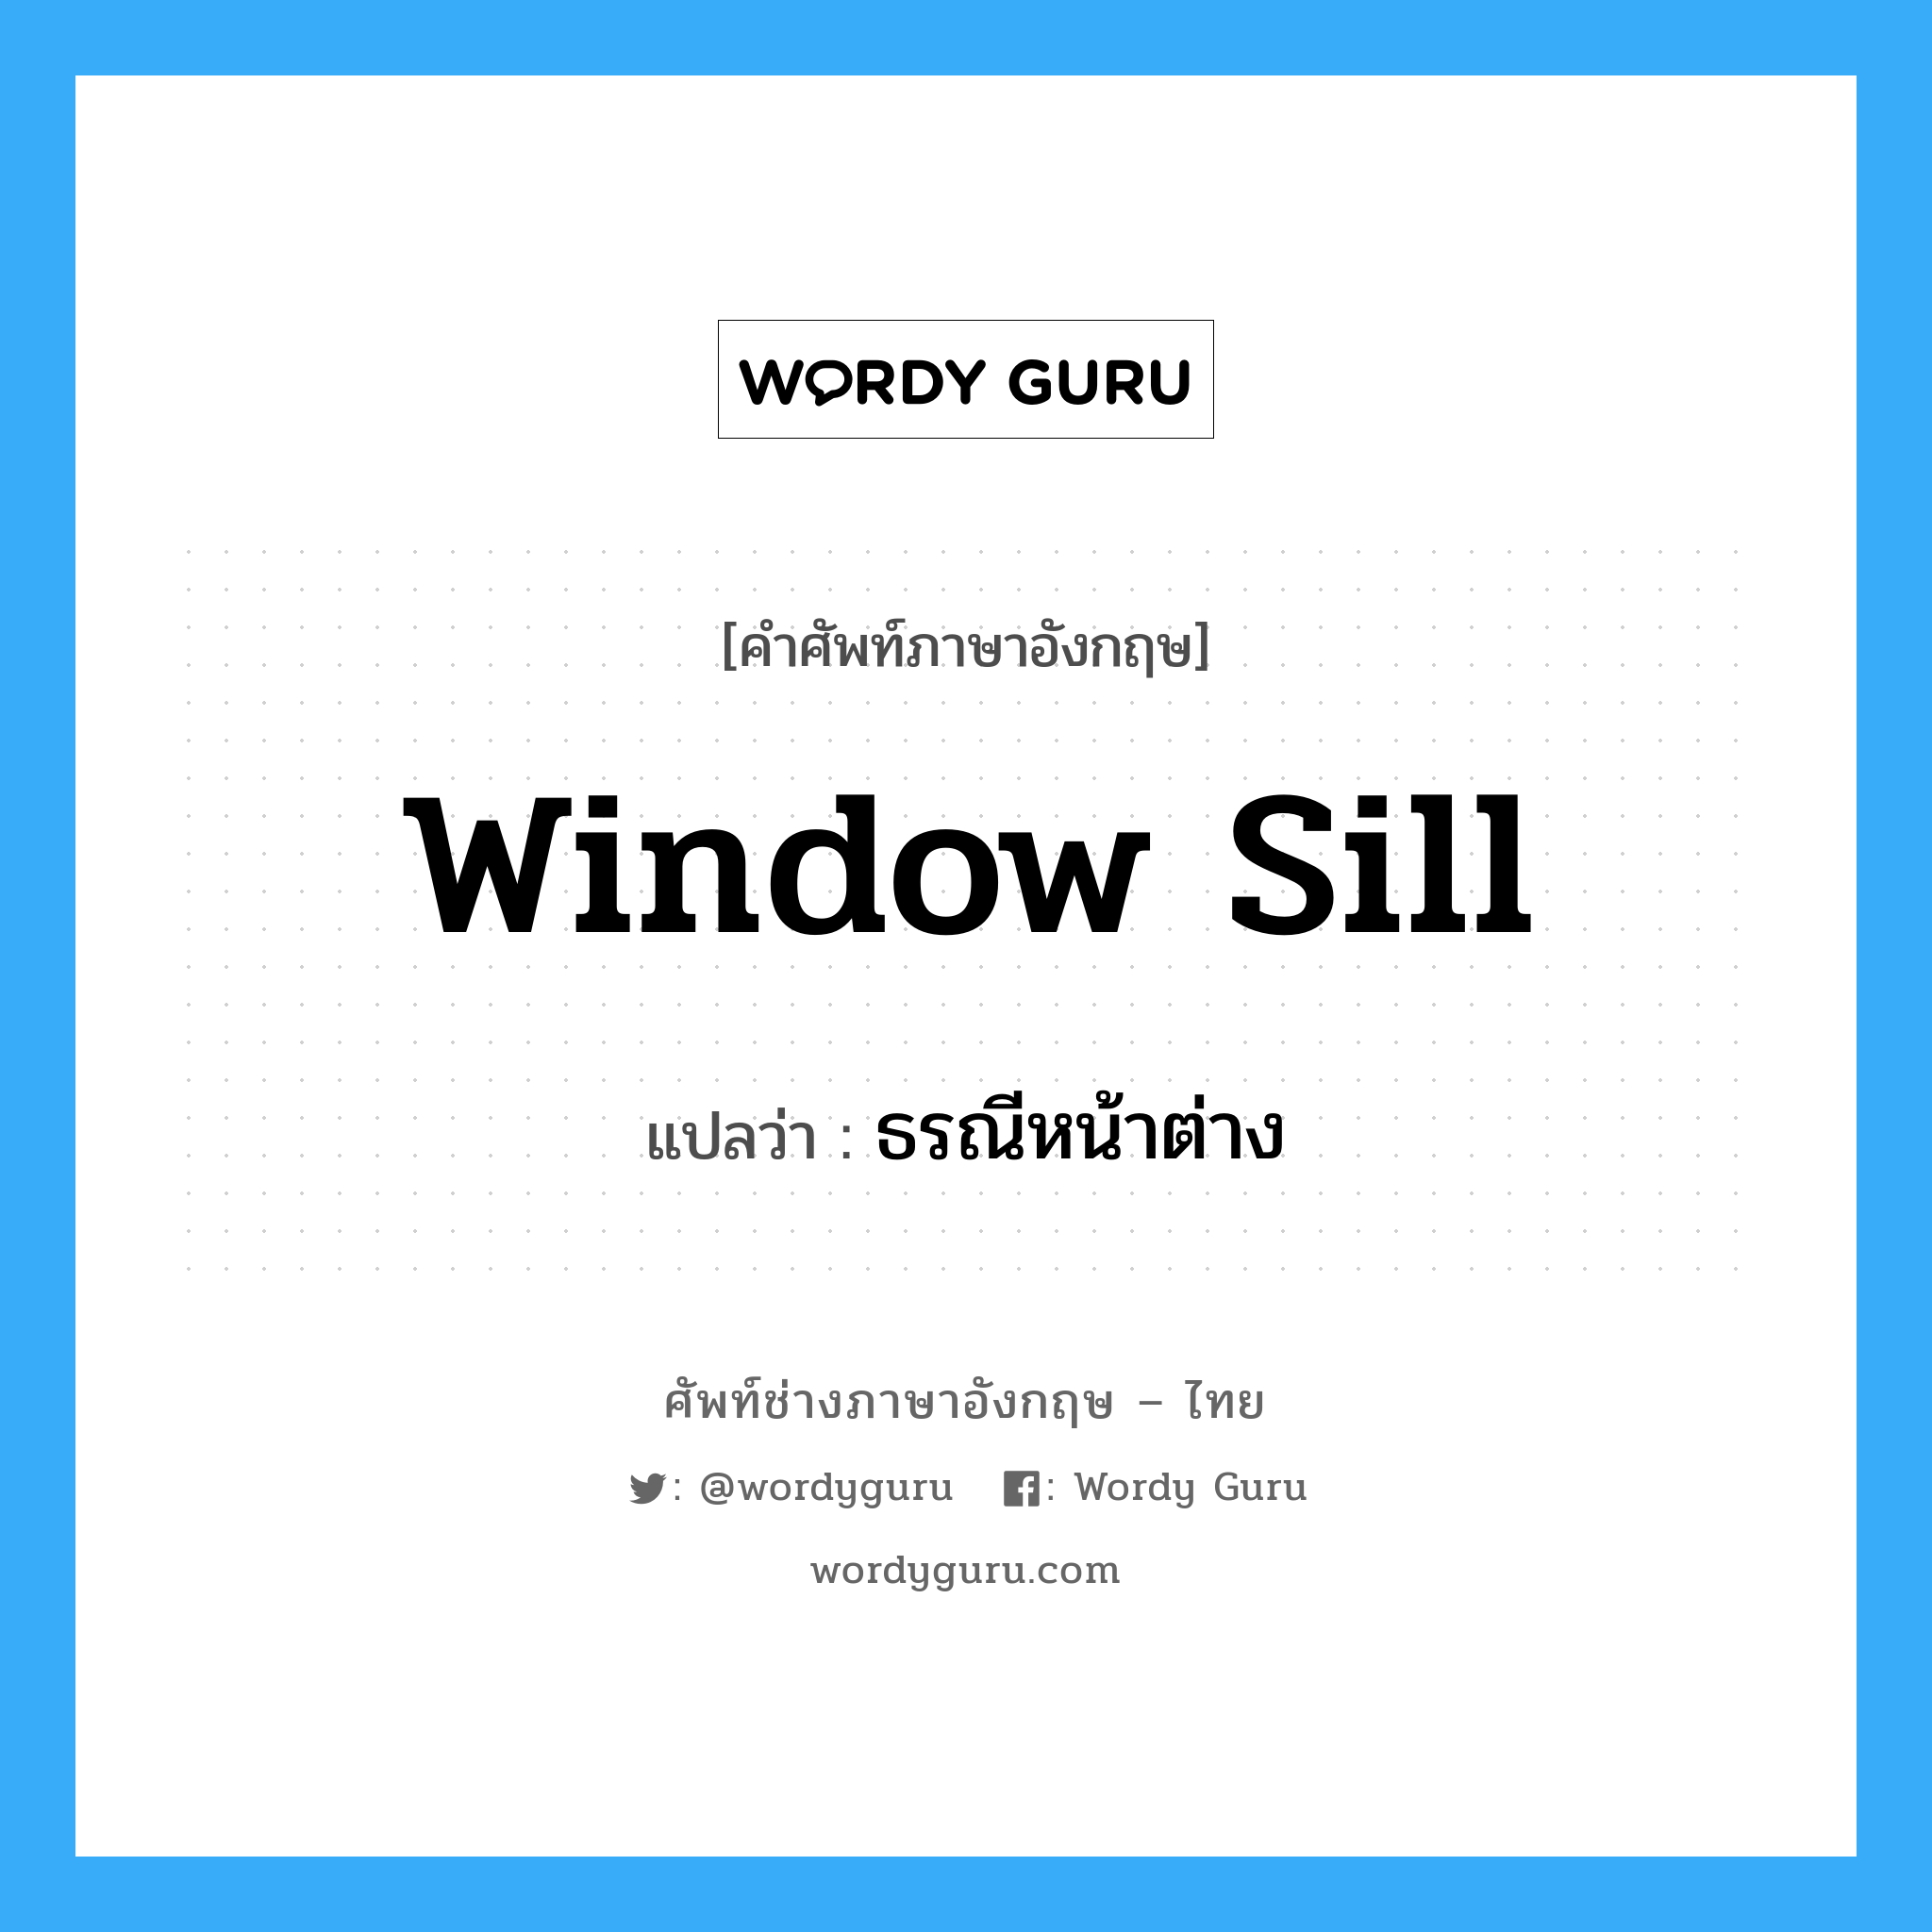 window-sill แปลว่า?, คำศัพท์ช่างภาษาอังกฤษ - ไทย window sill คำศัพท์ภาษาอังกฤษ window sill แปลว่า ธรณีหน้าต่าง